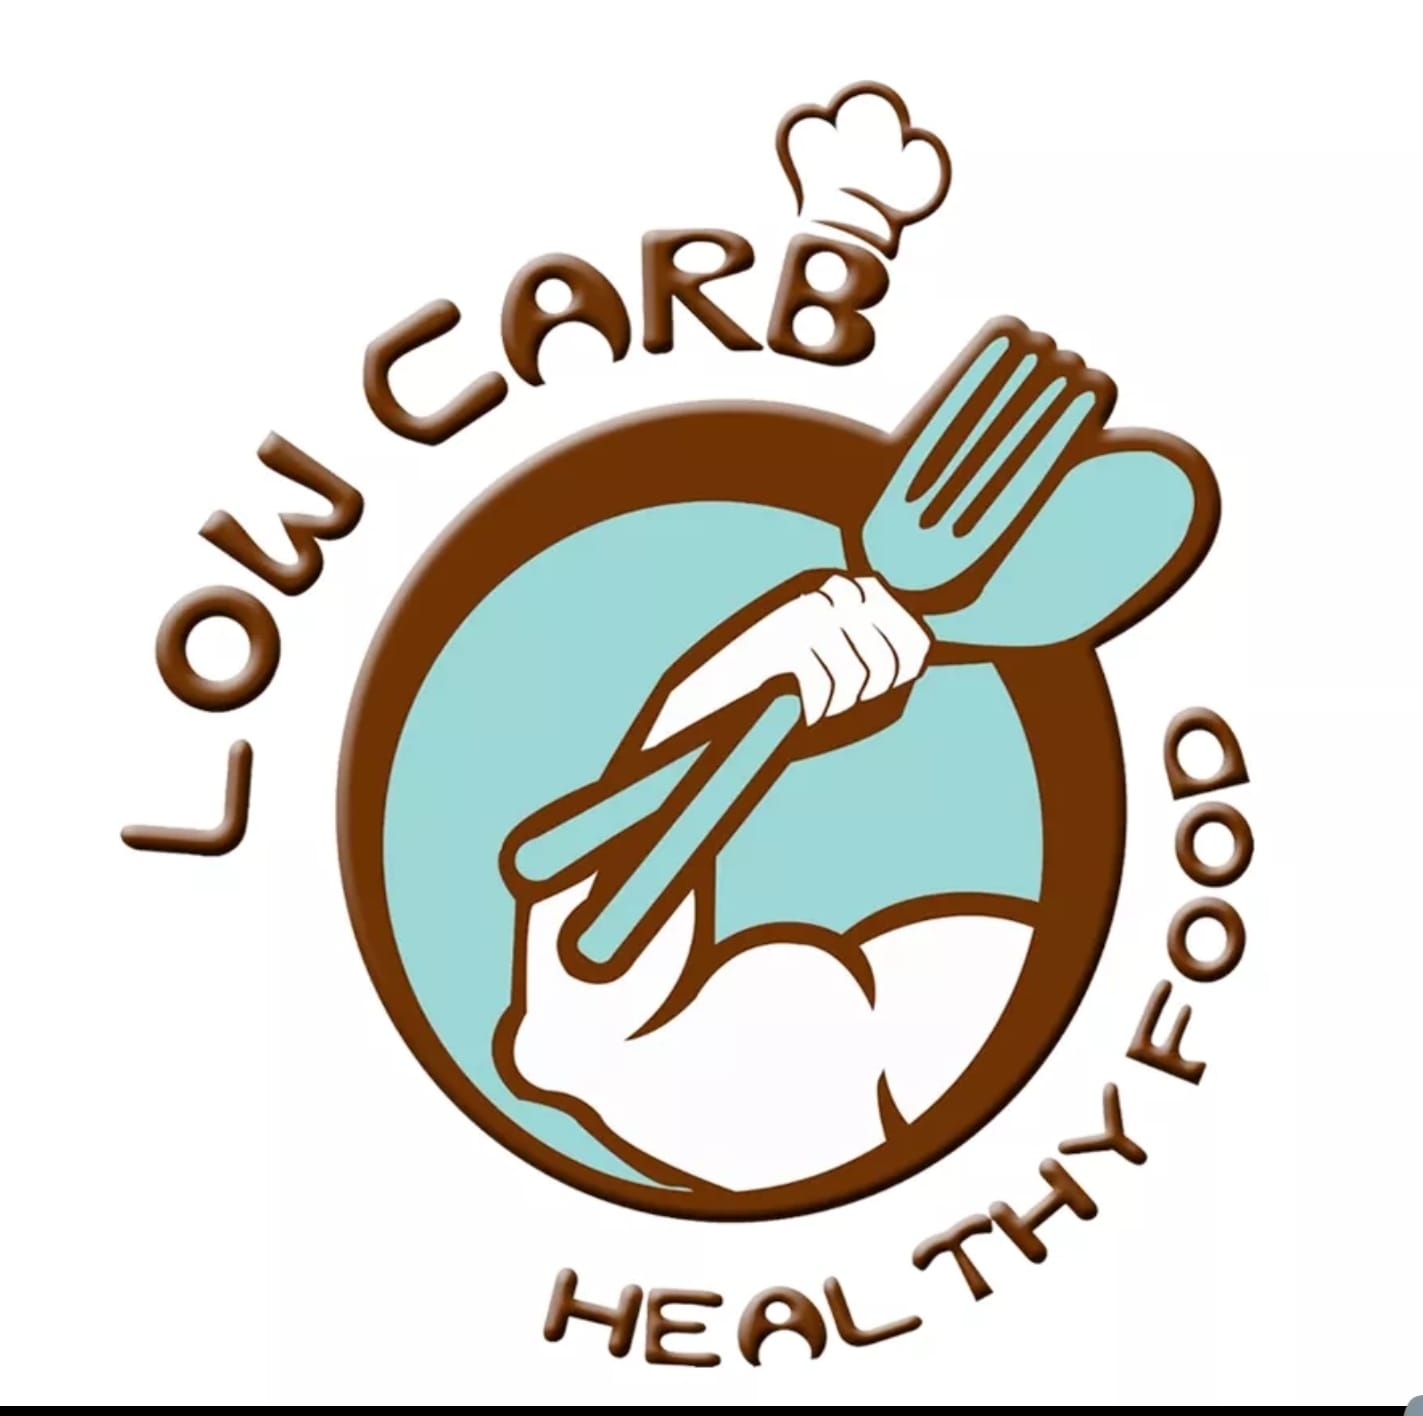 افضل مطاعم اكل صحي Healthy Food في عمان, الاردن - مطعم لو كارب للاكل الصحي - Low Carb Healthy Food